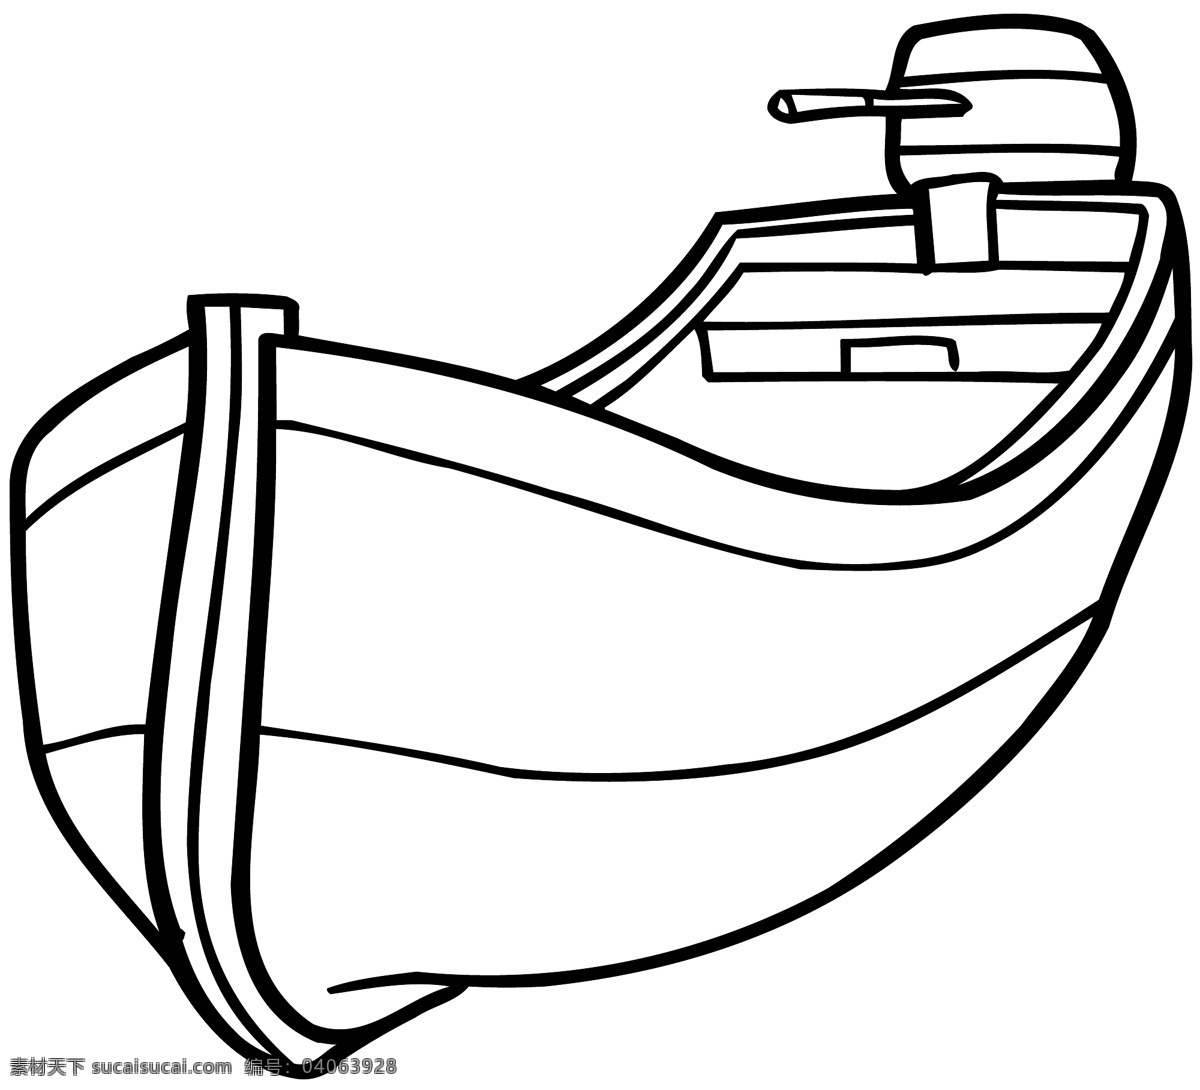 矢量船只 水上交通 矢量素材 格式 eps格式 设计素材 船的世界 交通运输 矢量图库 白色